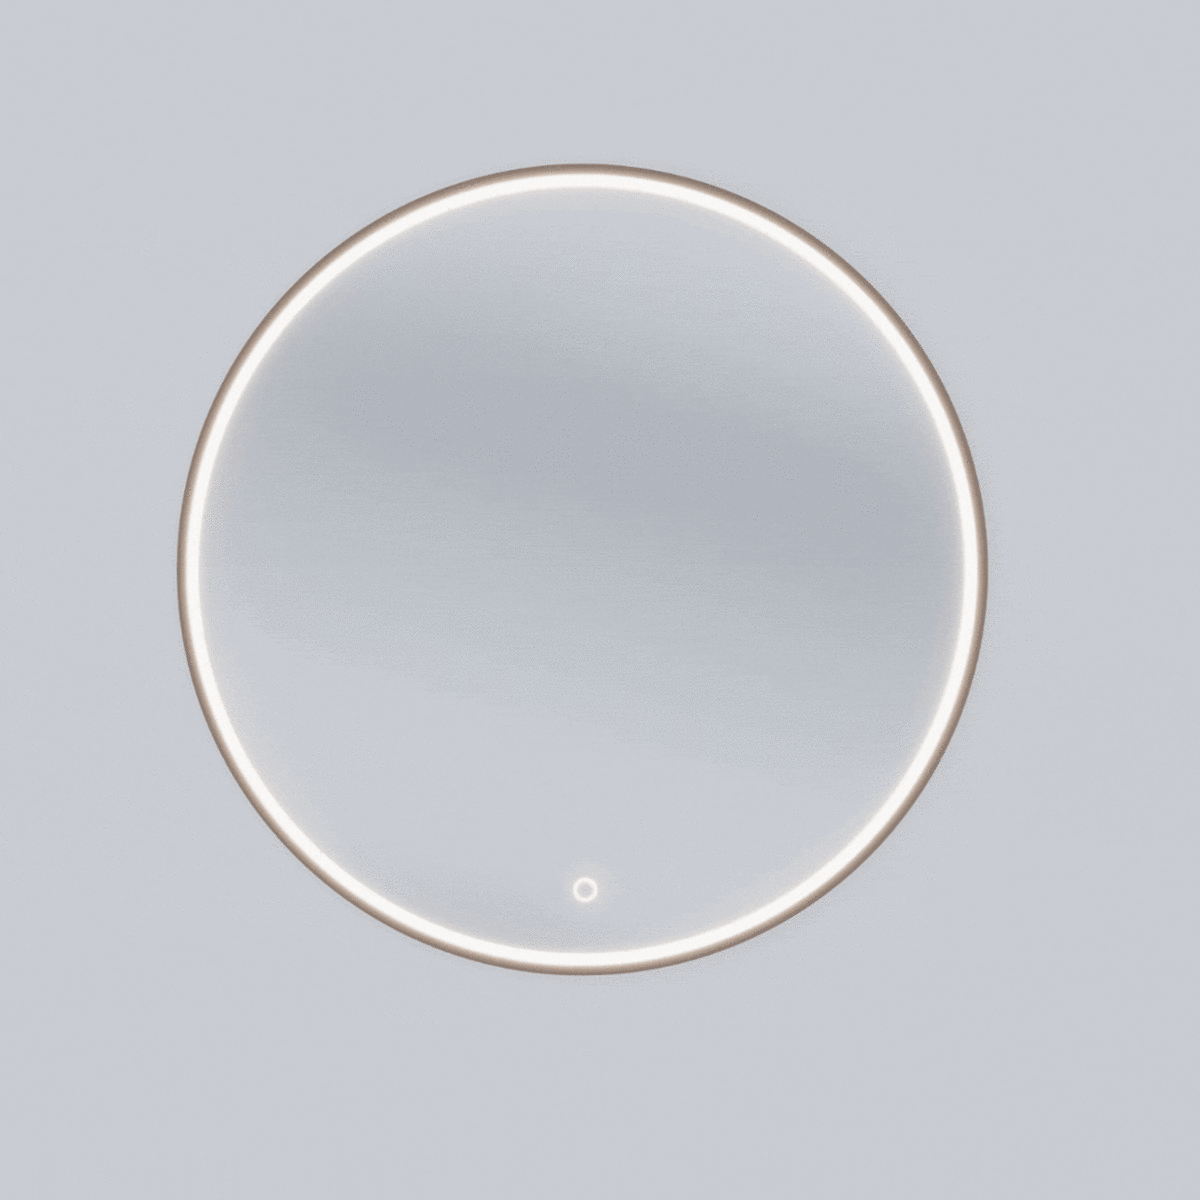 Zrcadlo Divissi L 60 cm s LED podsvícením